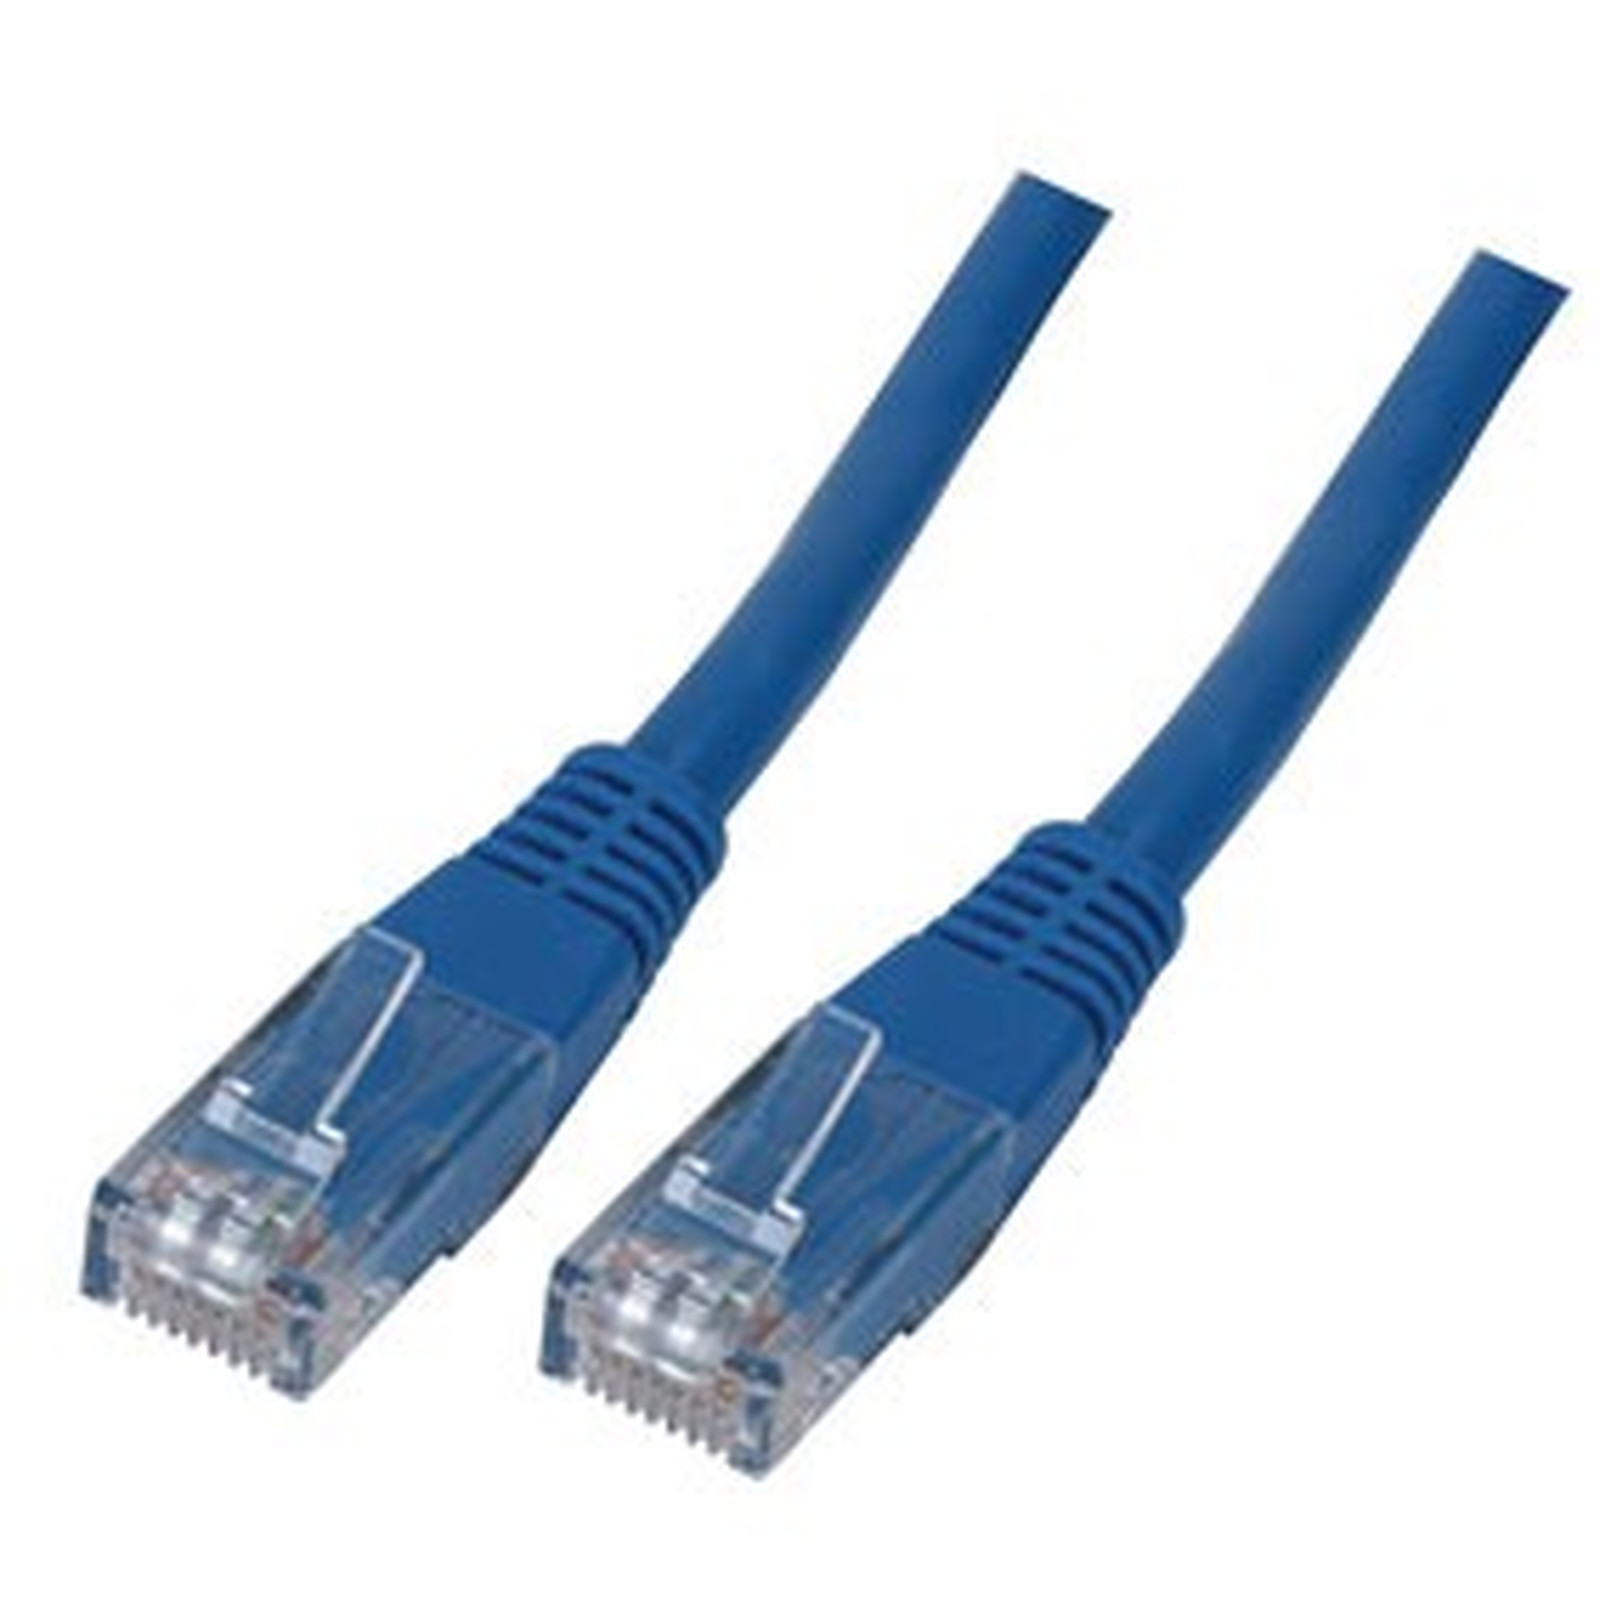 Cable RJ45 categorie 6 U/UTP 10 m (Bleu) - Cable RJ45 Generique